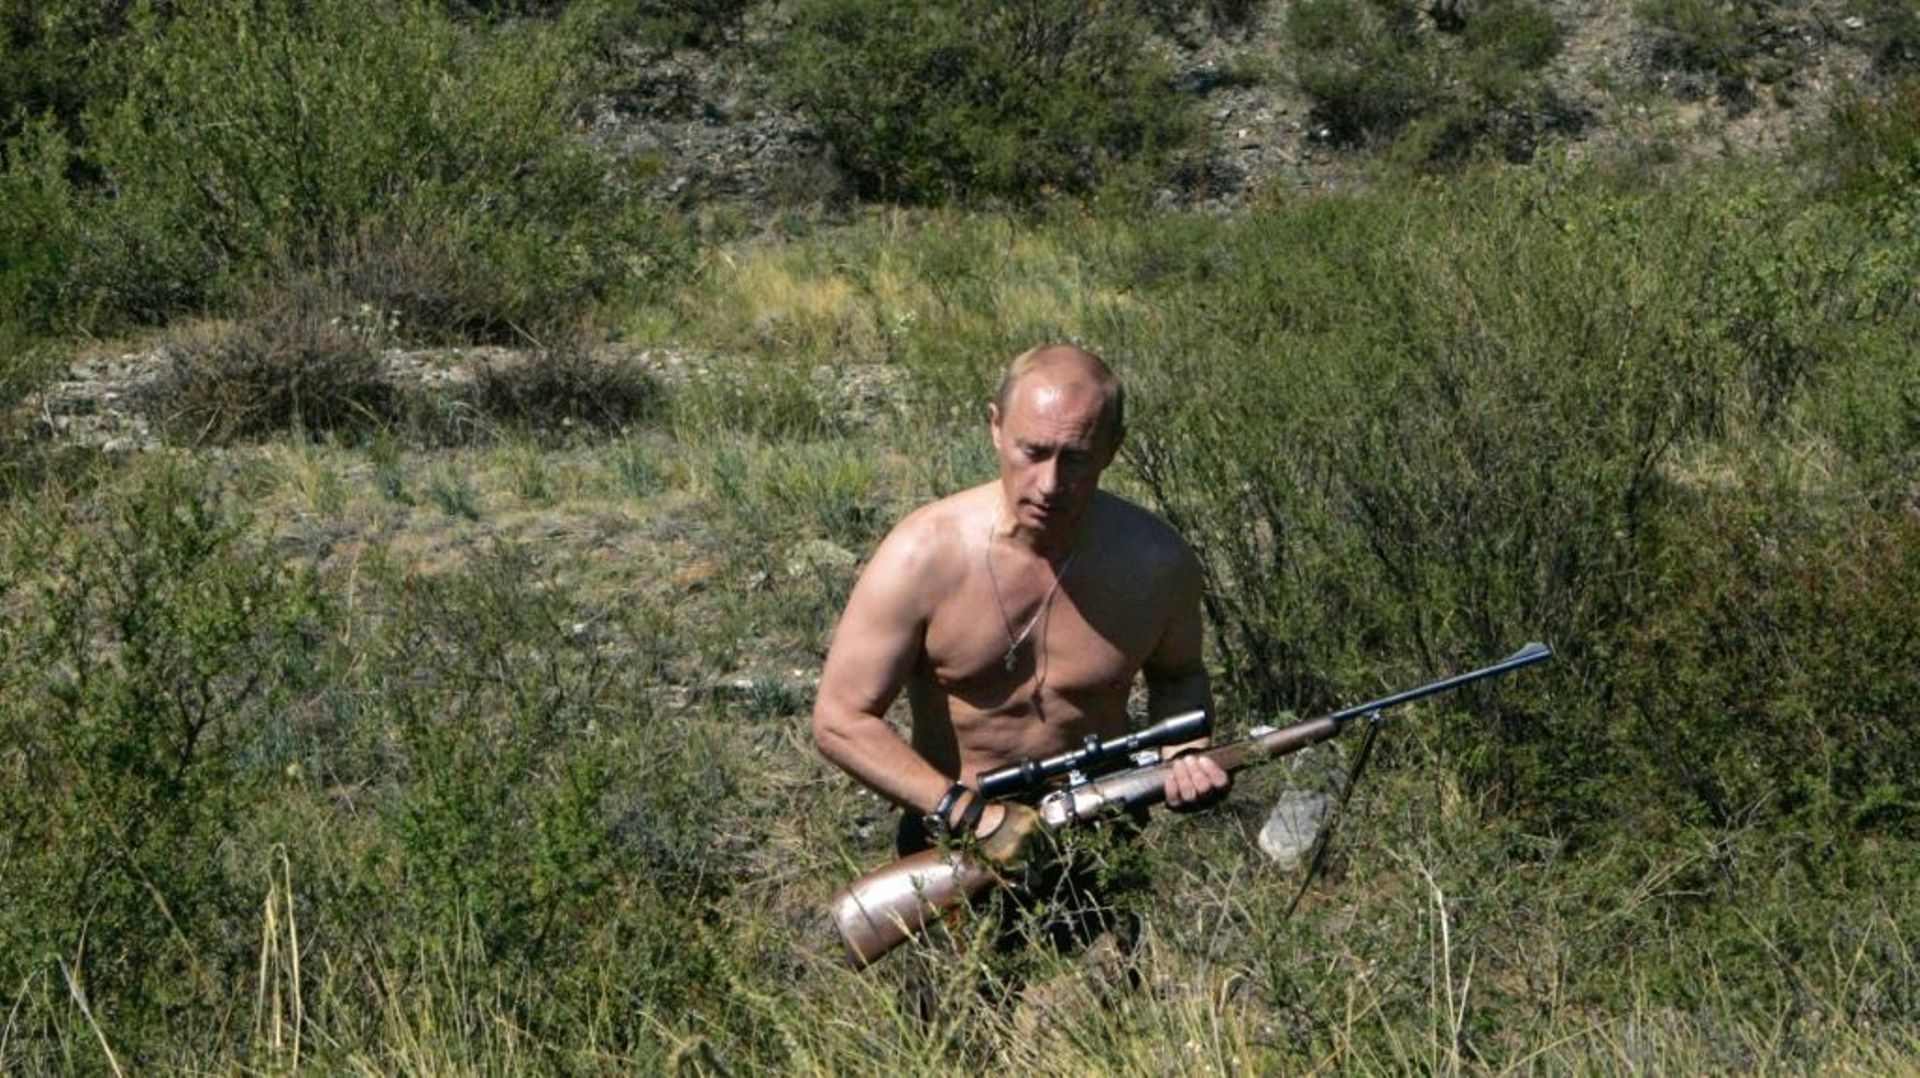 Vladimir Poutine torse nu, lors d'une partie de chasse en août 2007